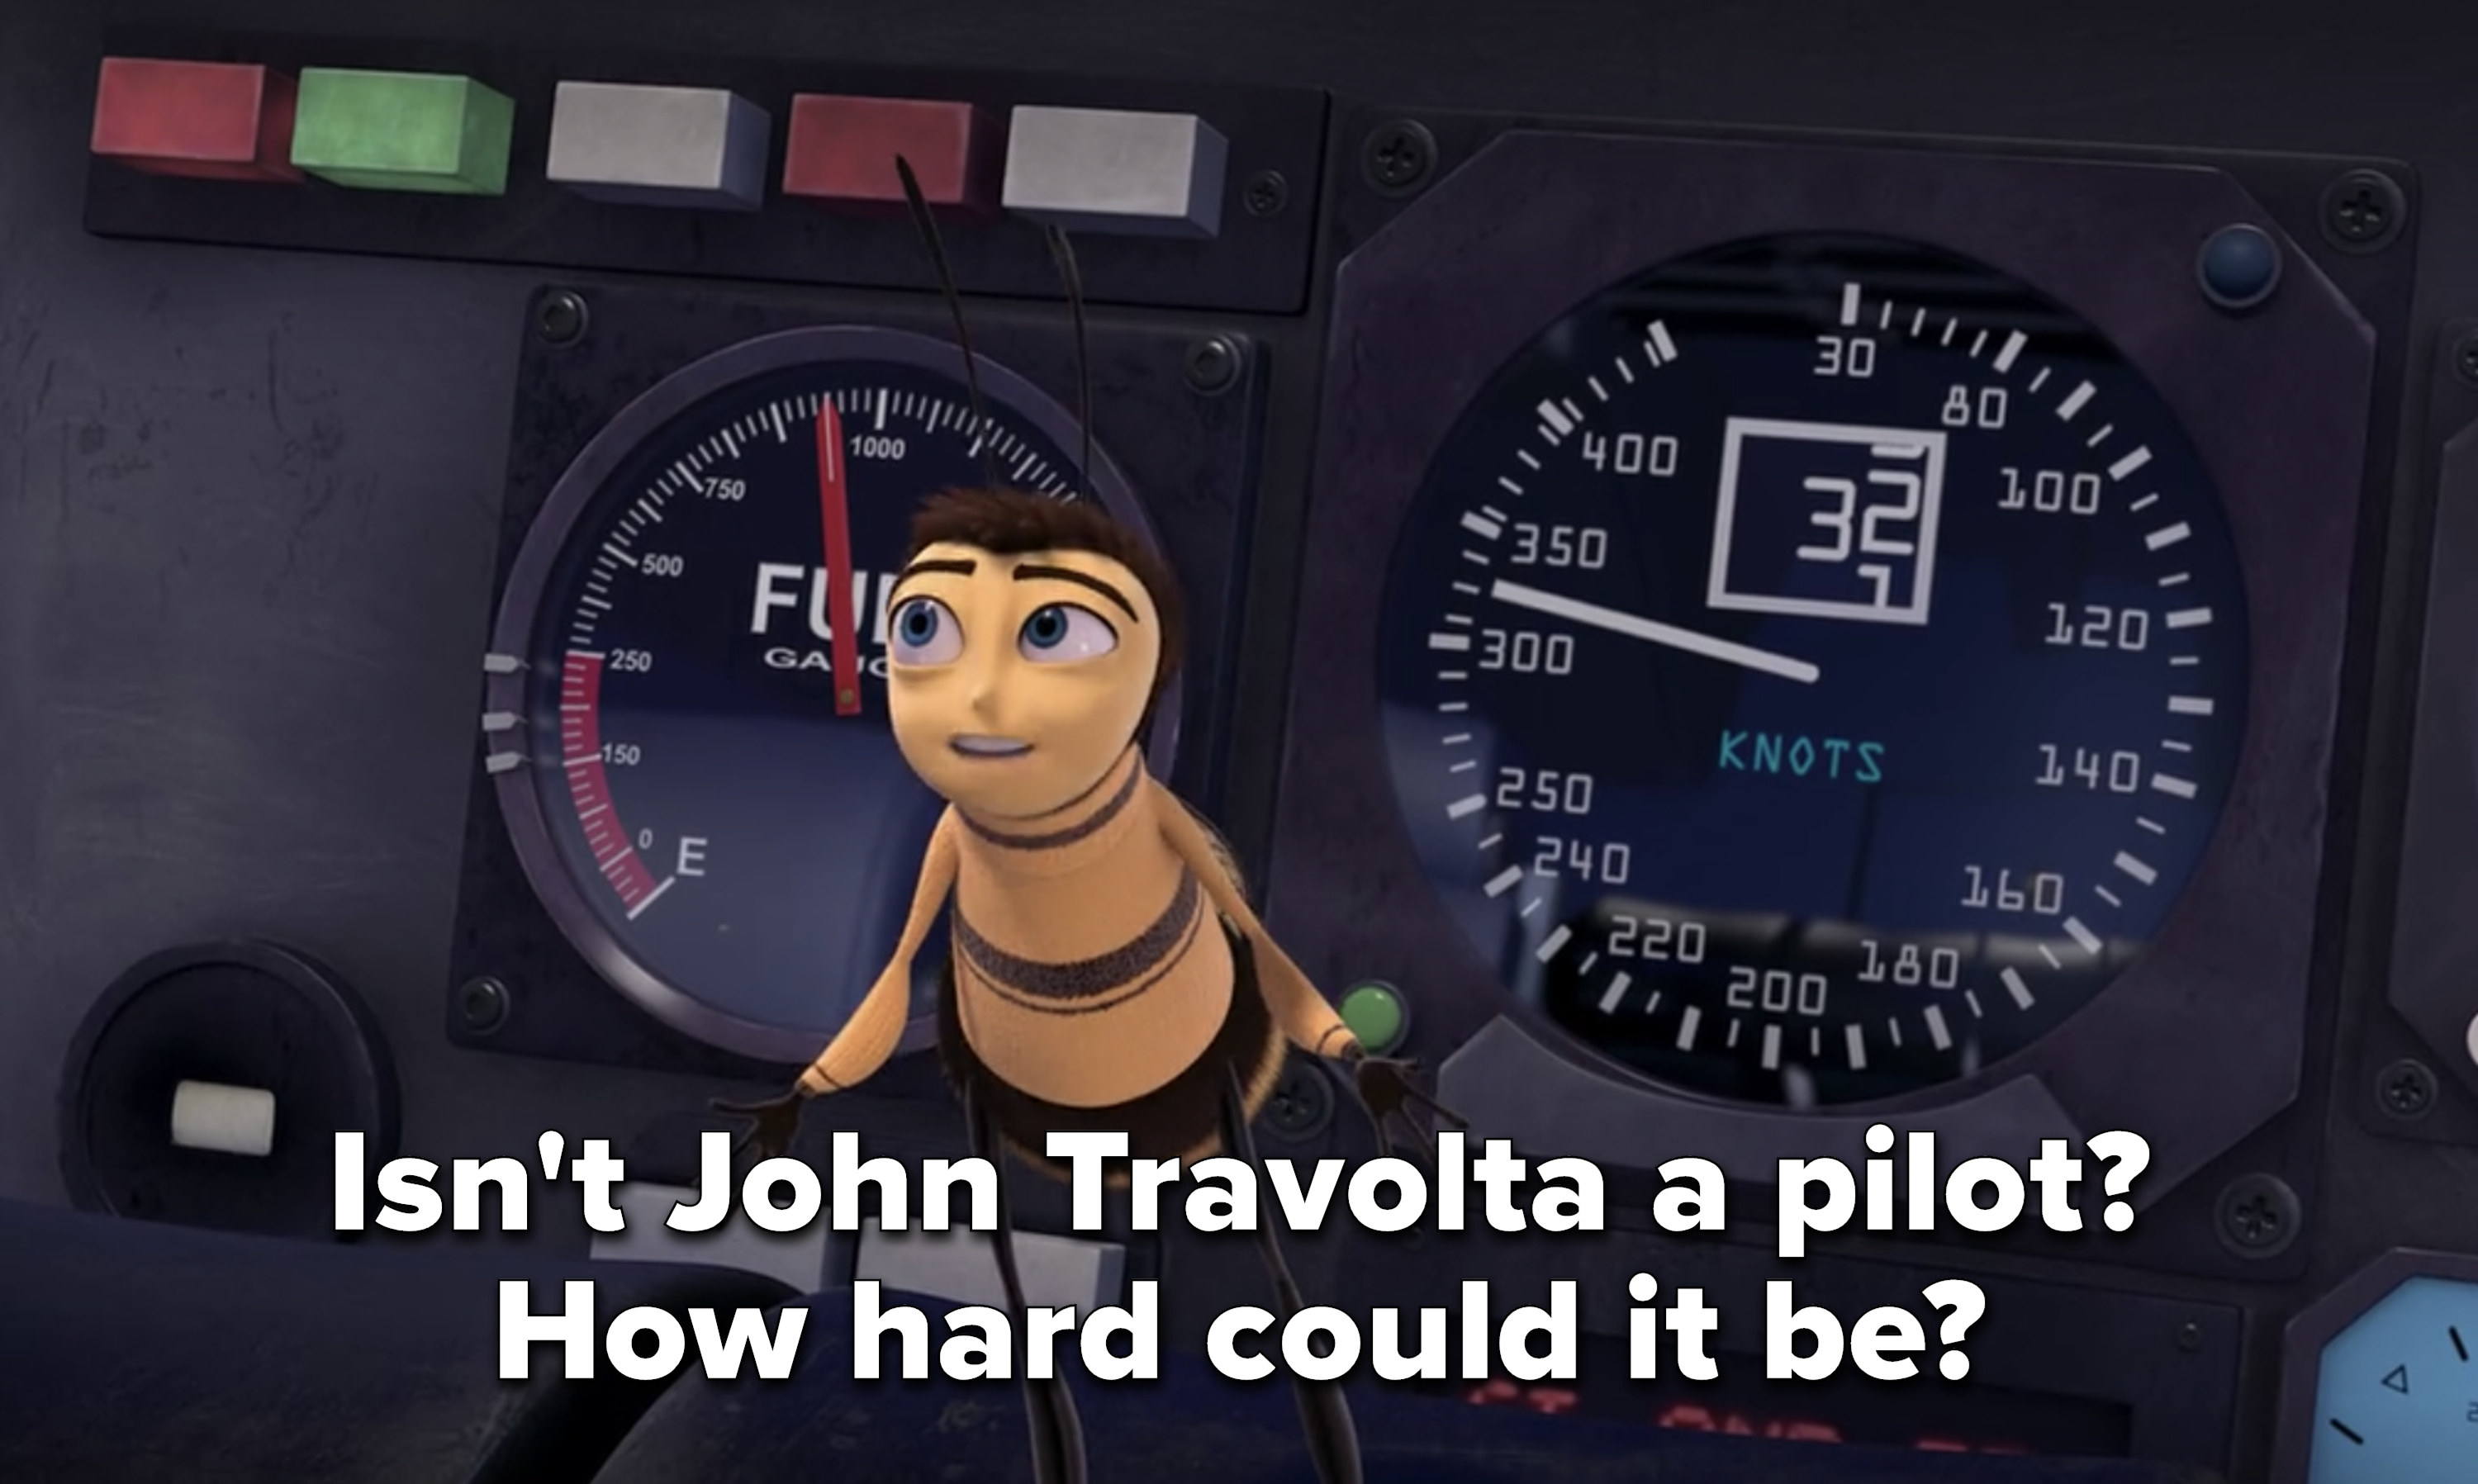 Barry asks &quot;Isn&#x27;t John Travolta a pilot? How hard could it be?&quot;